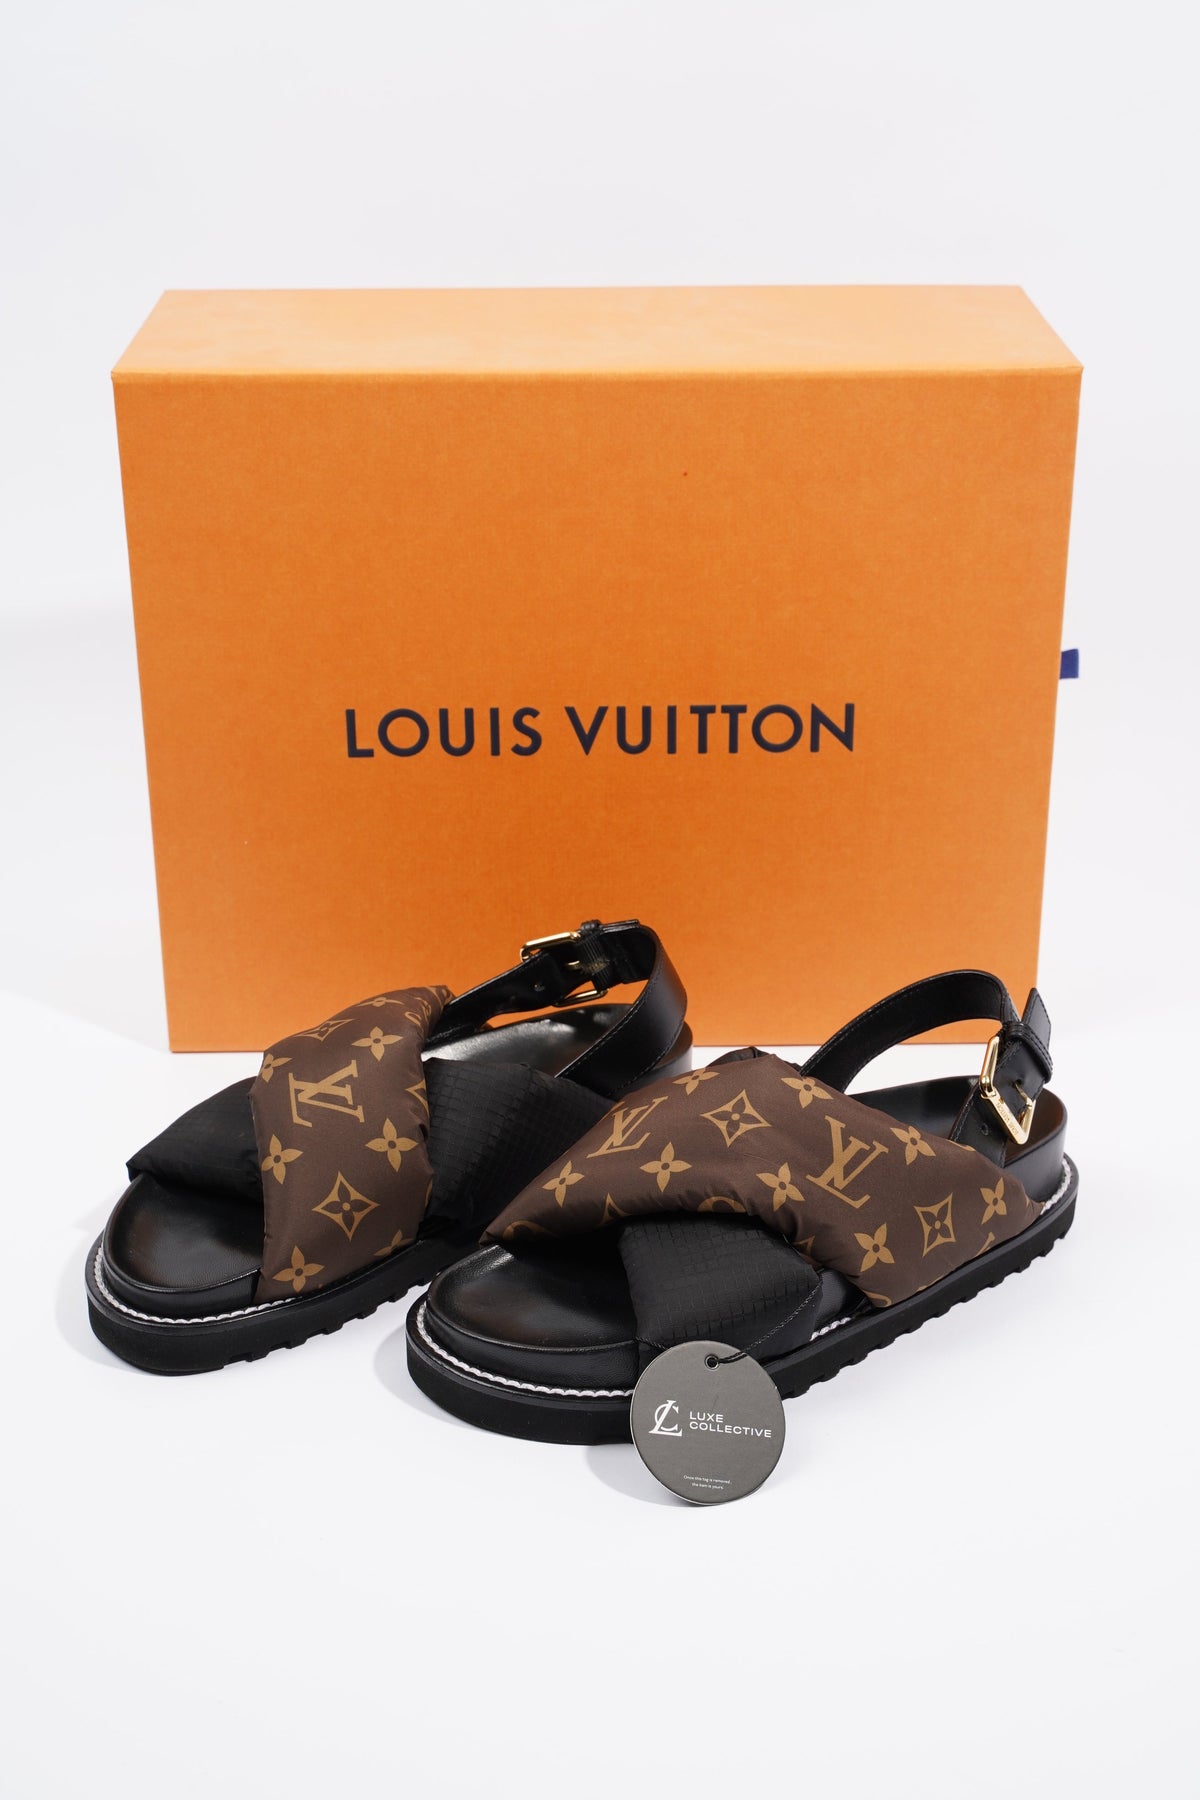 Confort Paseo Louis Vuitton Sandals for Women - Vestiaire Collective